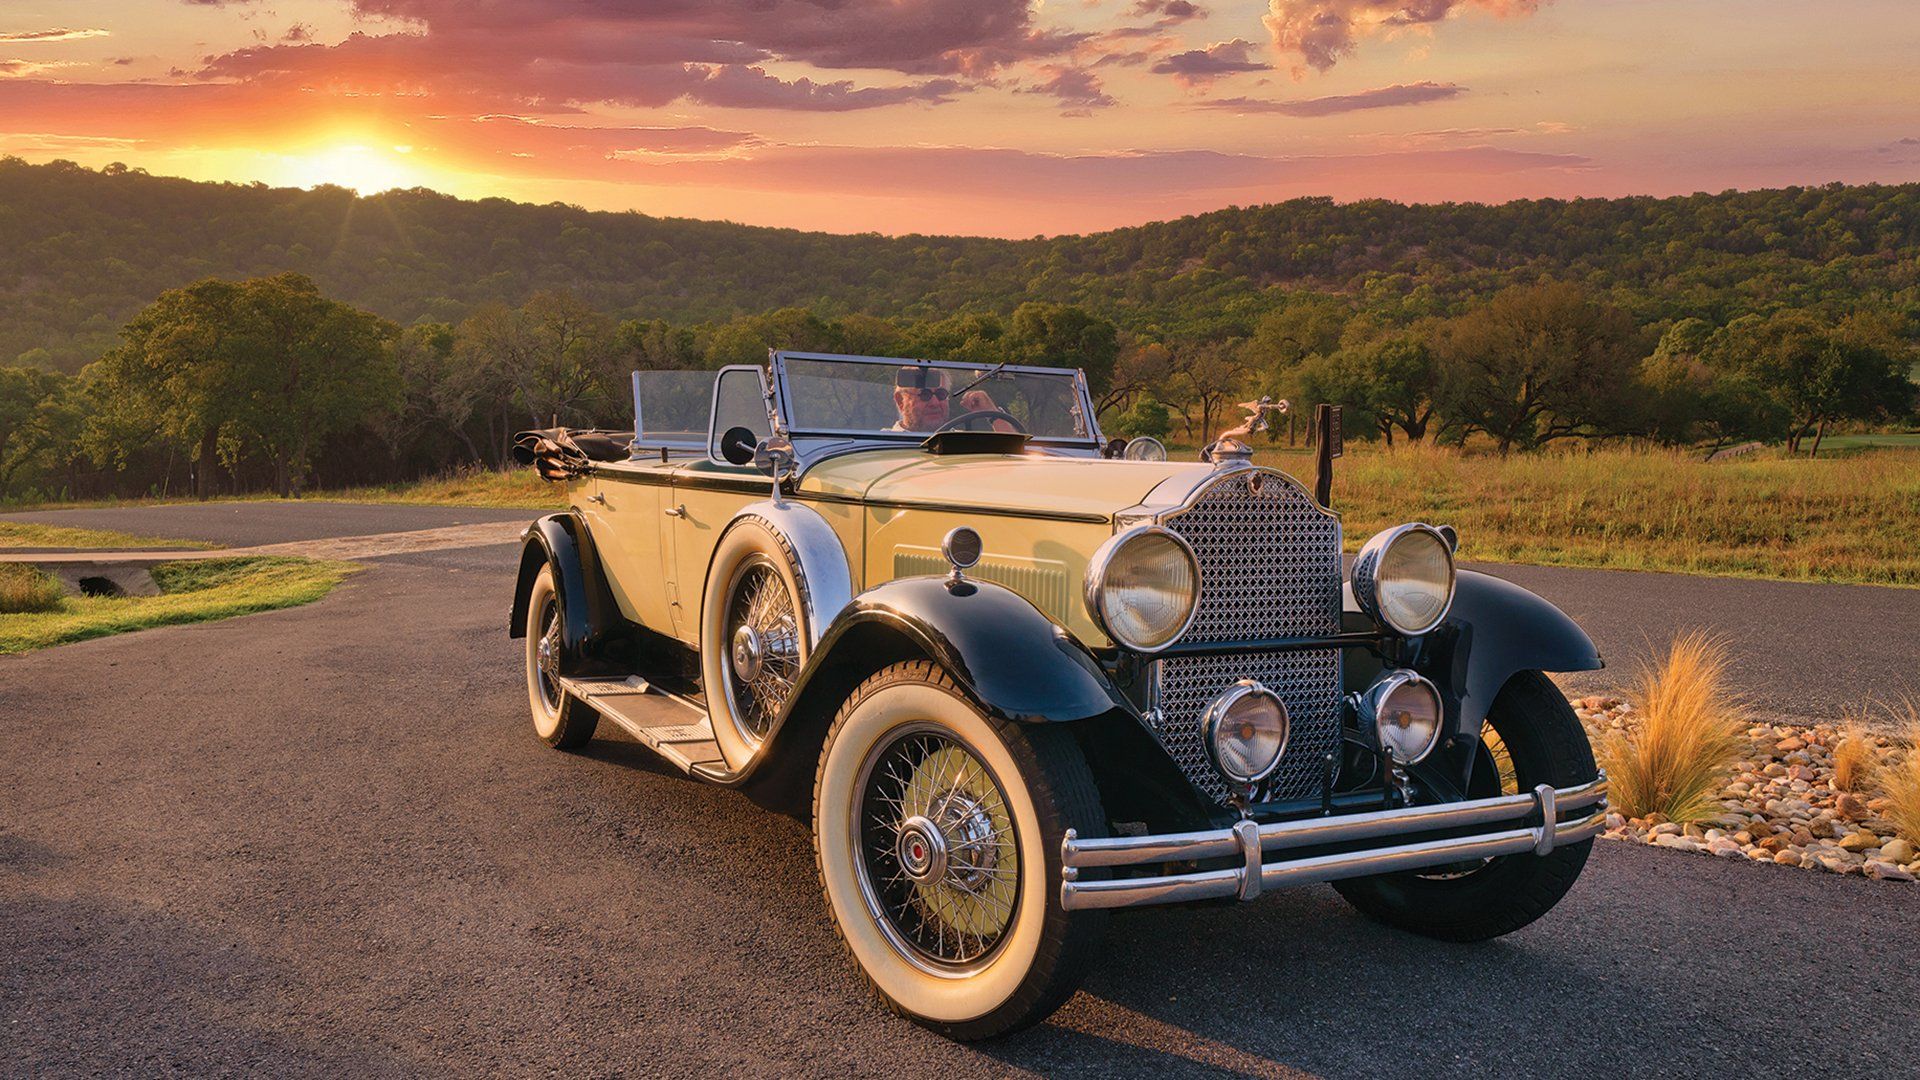 A 1930 Packard Phaeton